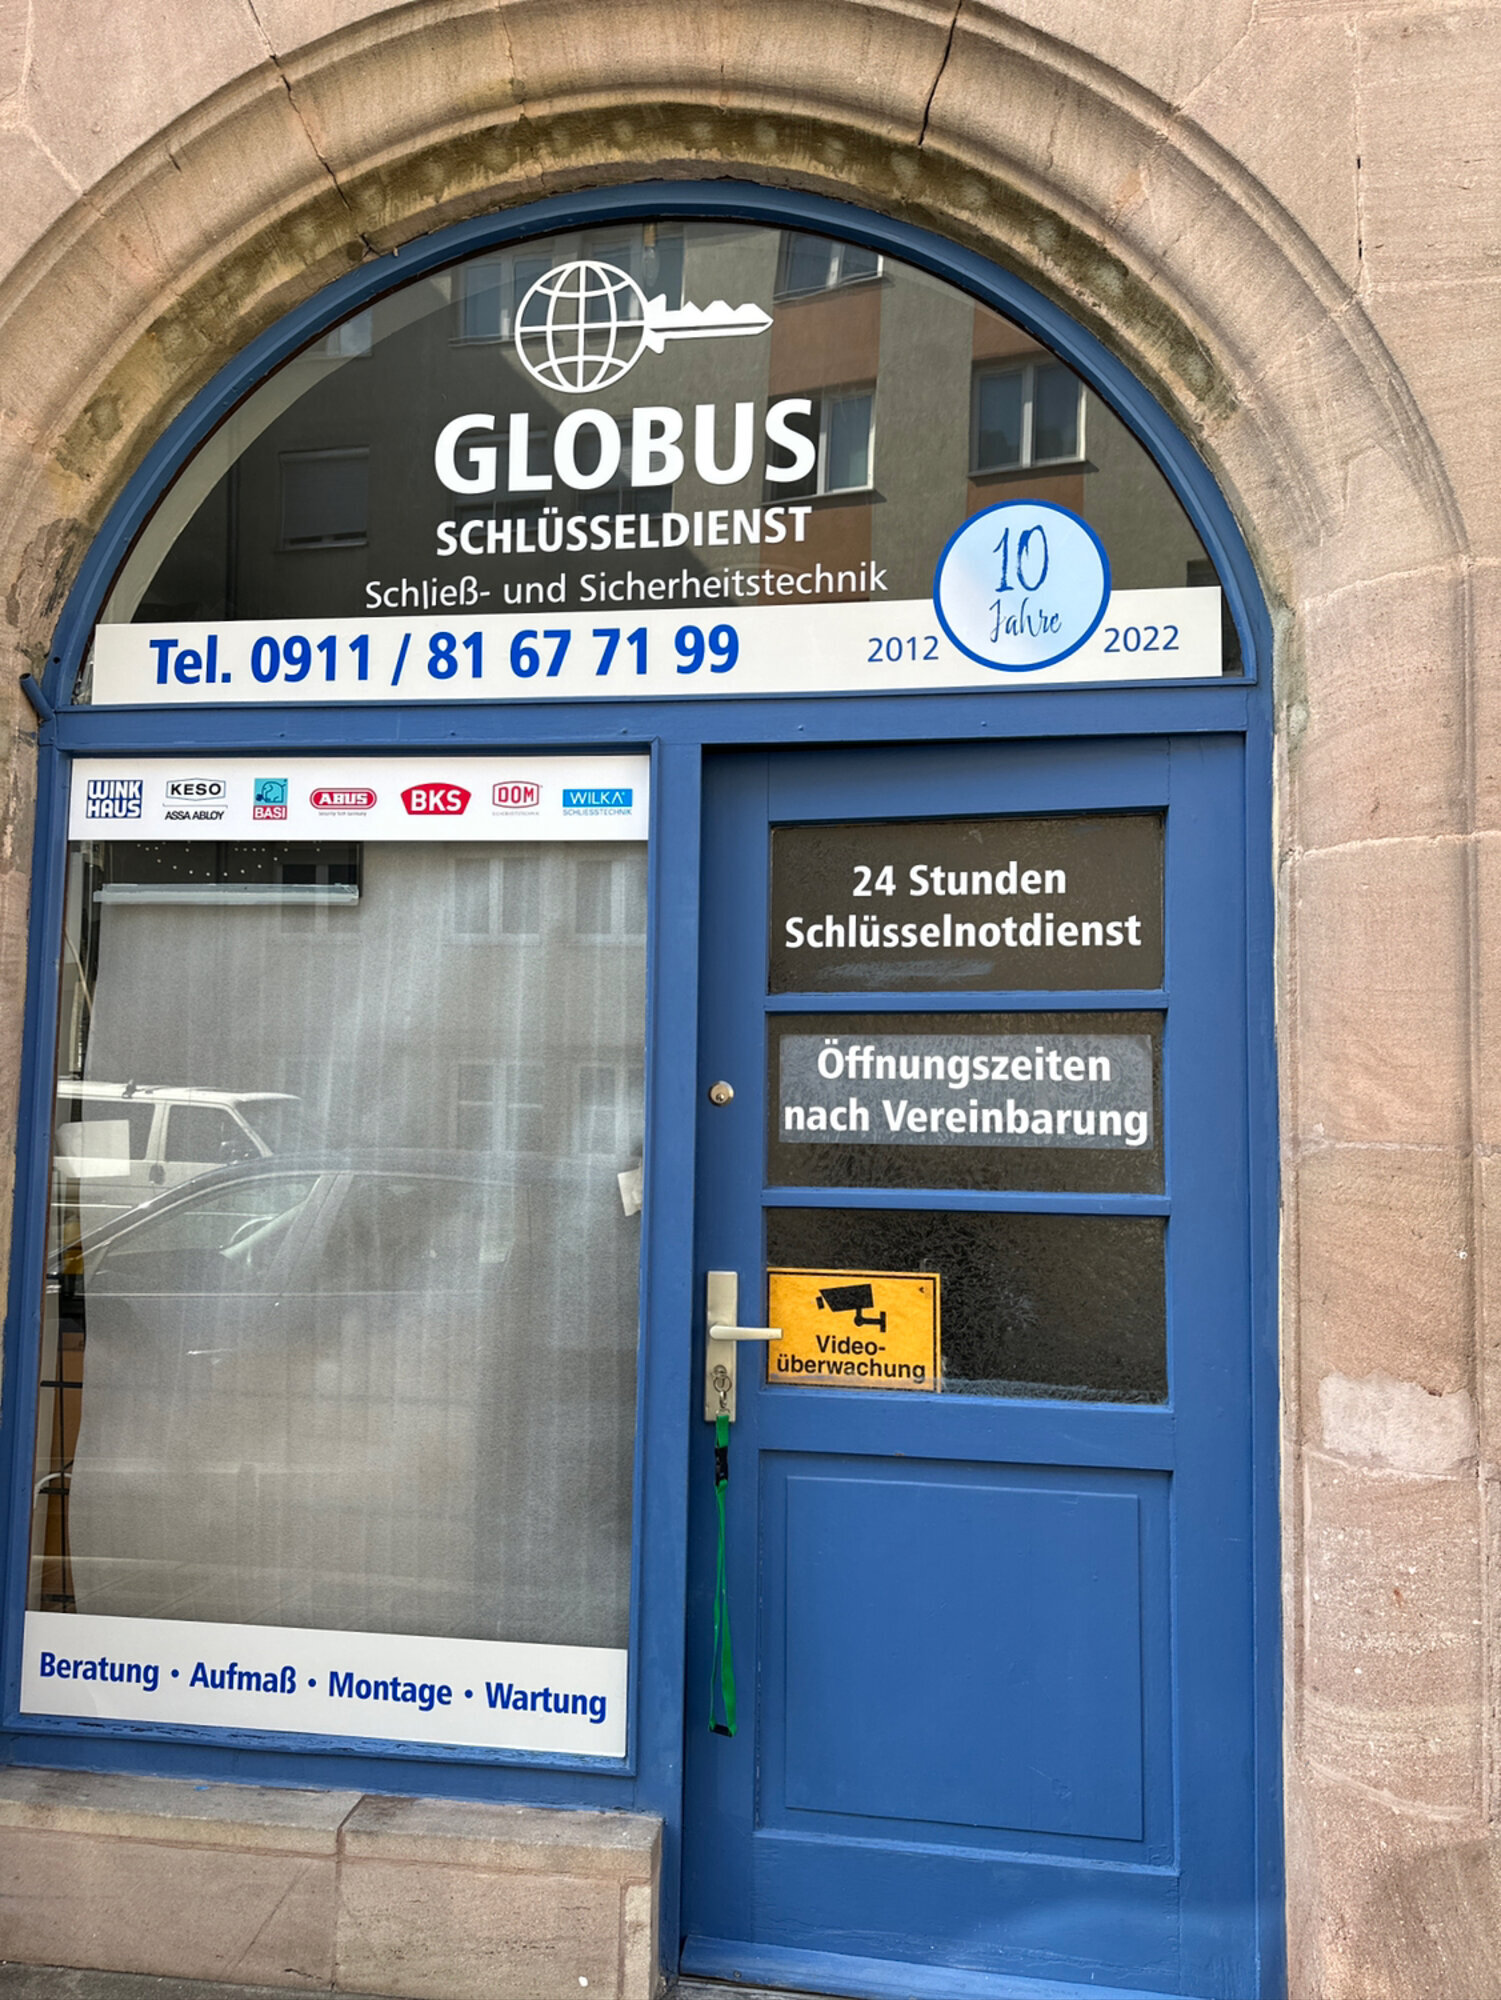 Bild 17 Globus Schlüsseldienst Schließ- und Sicherheitstechnik in Nürnberg